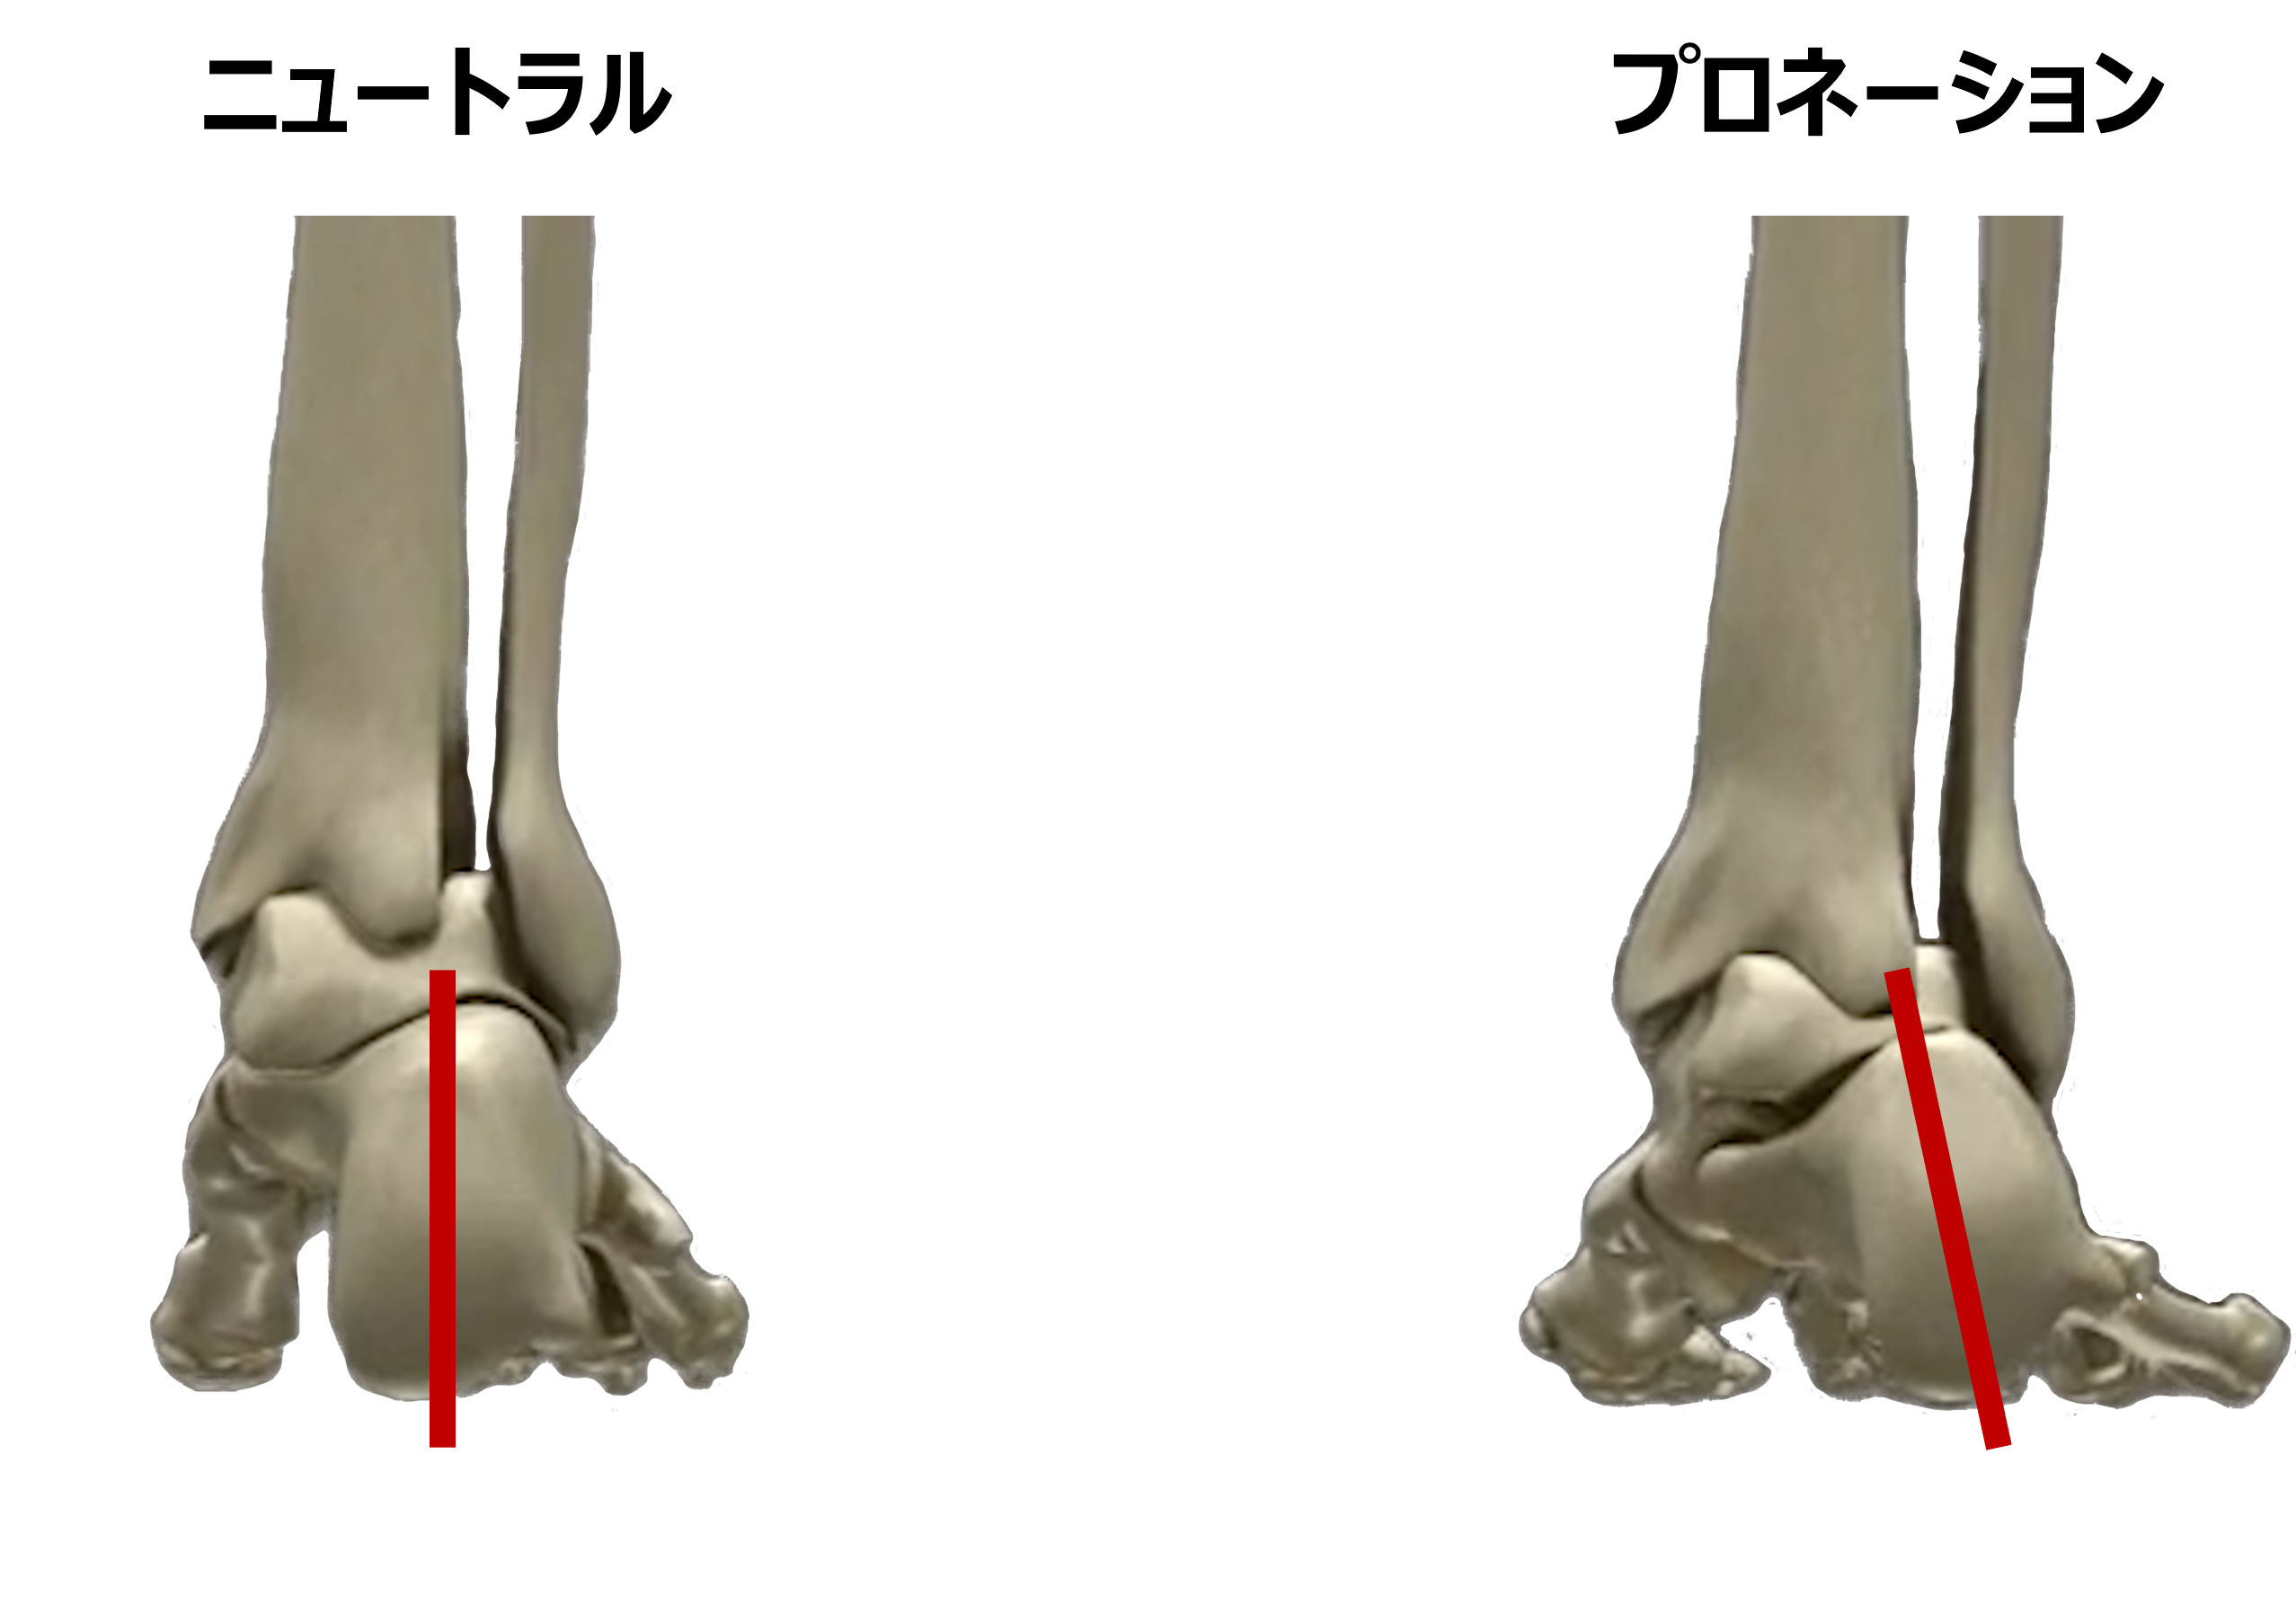 ニュートラルな足とプロネーションの足の比較
かかとの骨（踵骨）がどこまで傾くかという点については議論があるが、踵骨やその上の距骨のかみ合わせが緩いと、かかと周りの骨の挙動が大きくなり、足がオーバープロネーション（過剰回内）の状態となりやすい。